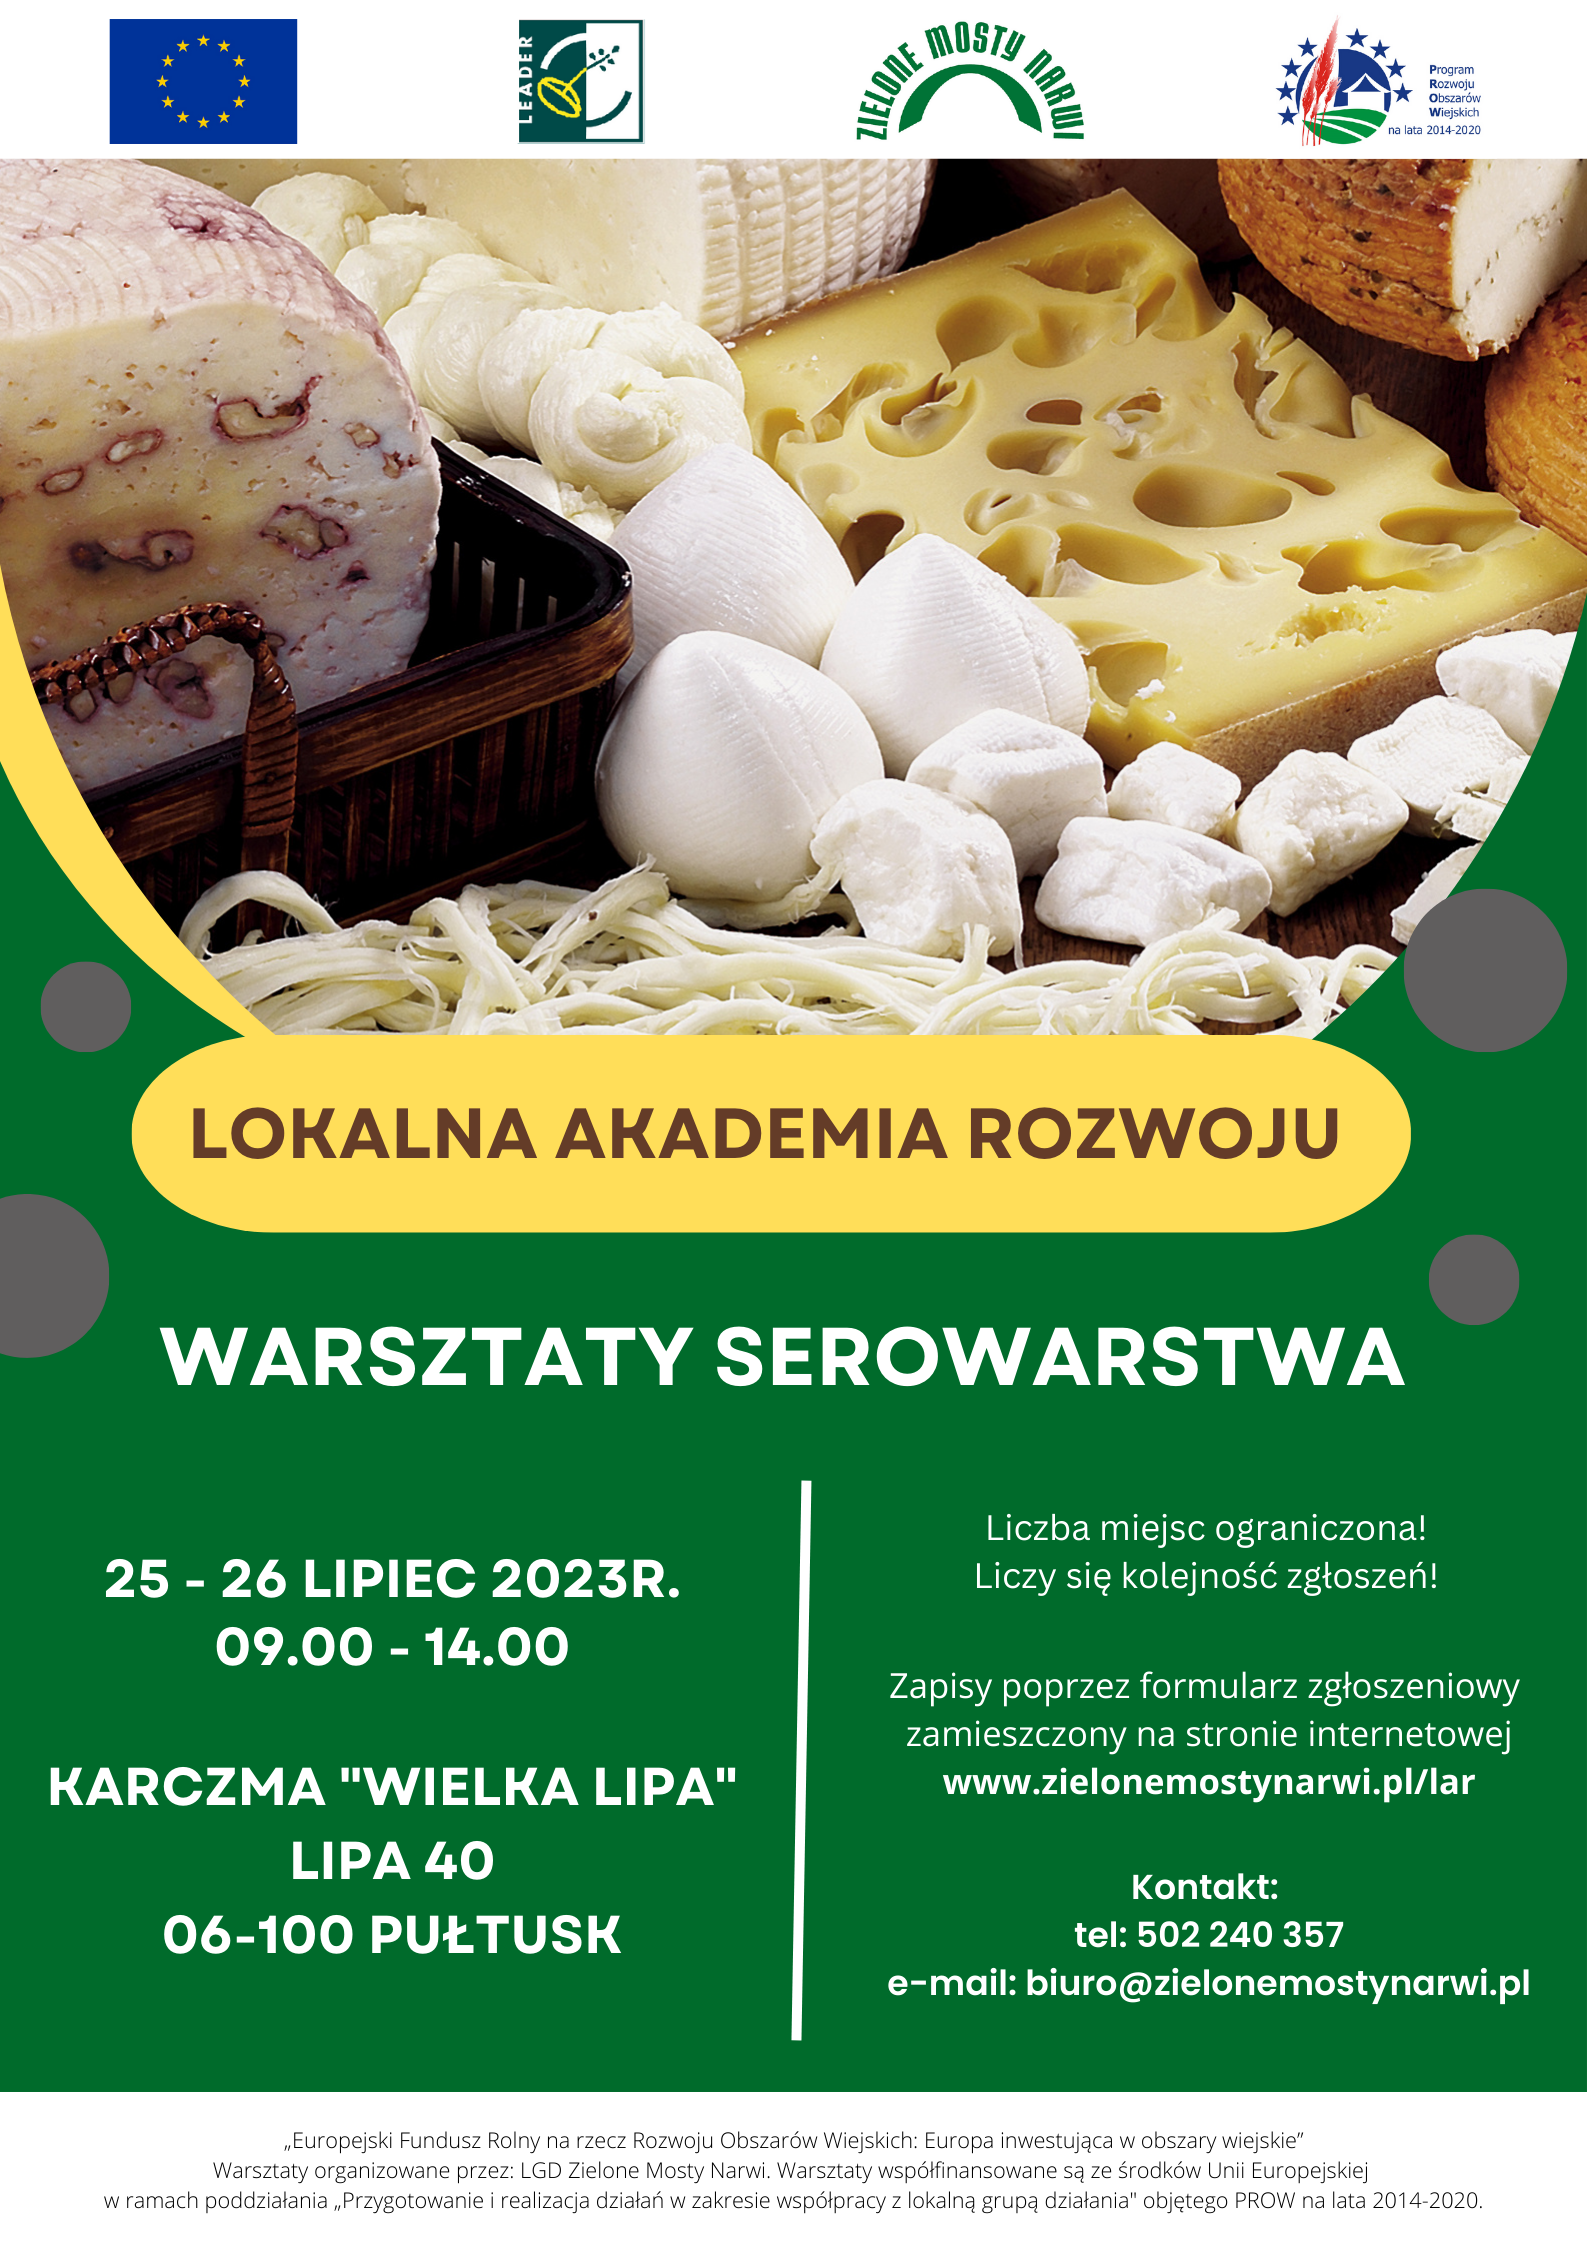 LGD Zielone Mosty Narwi: Rekrutacja na warsztat serowarski 25-26 lipiec 2023 r.